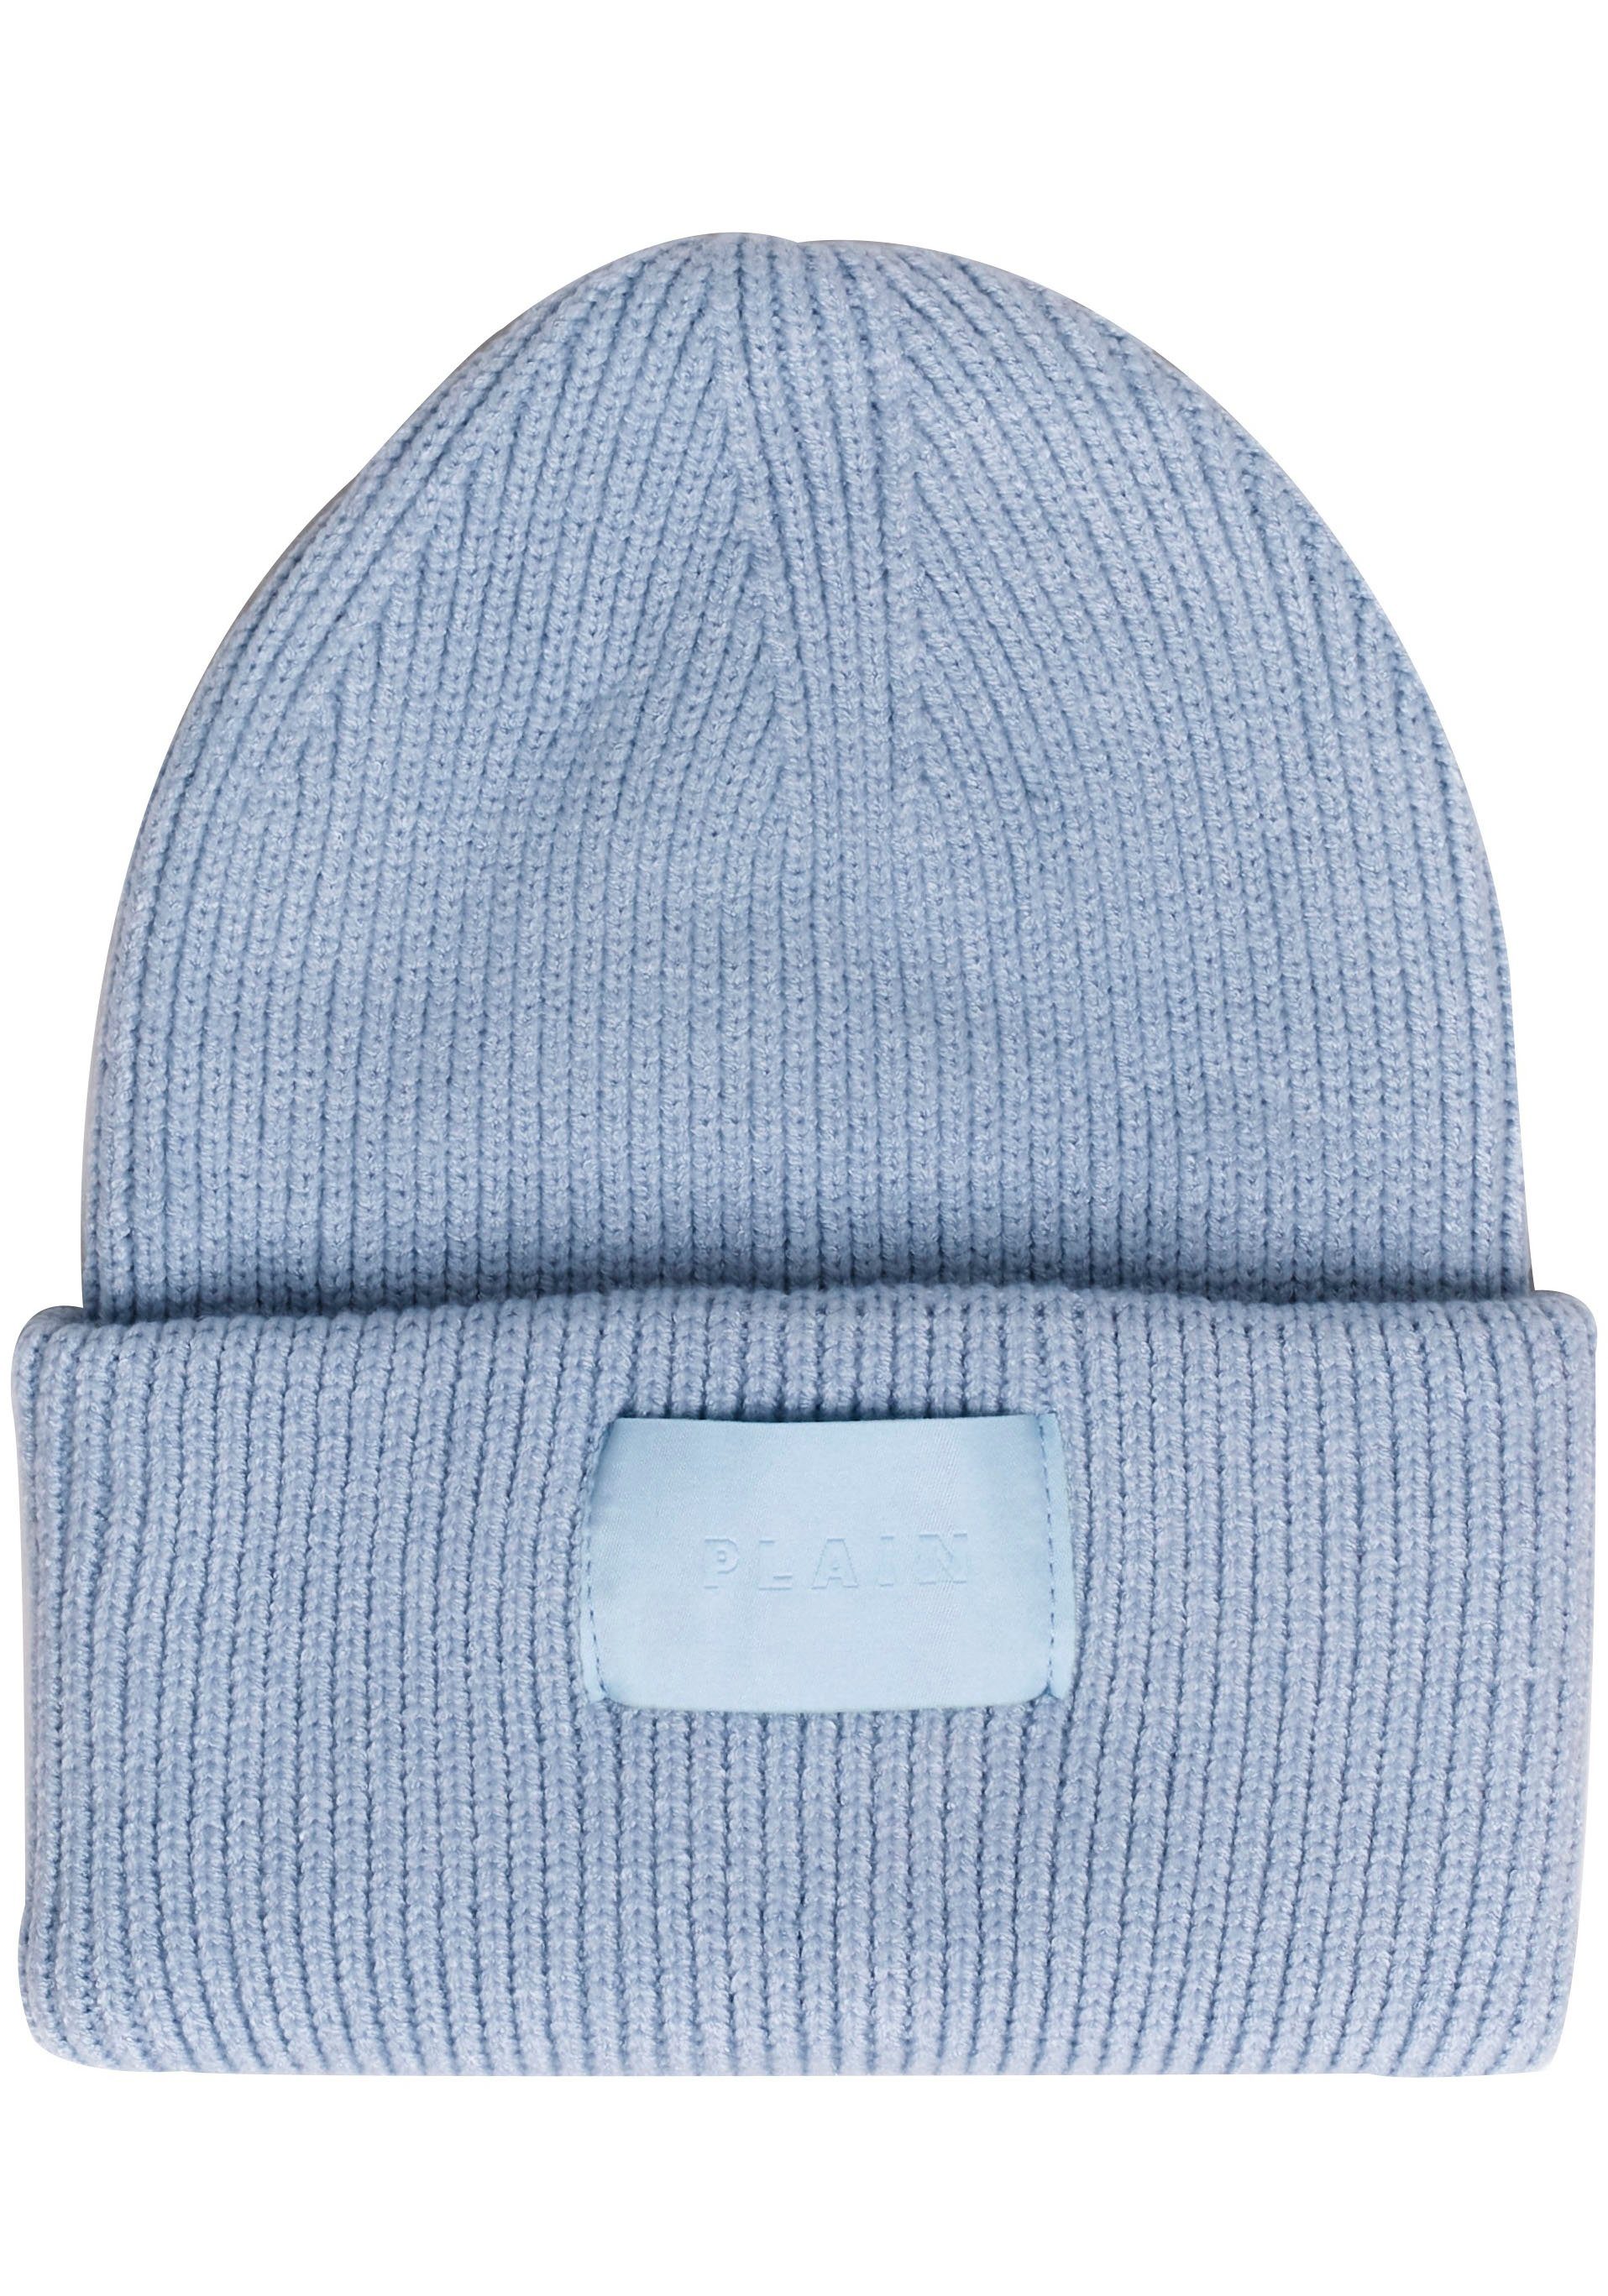 Mütze in blau online kaufen | OTTO